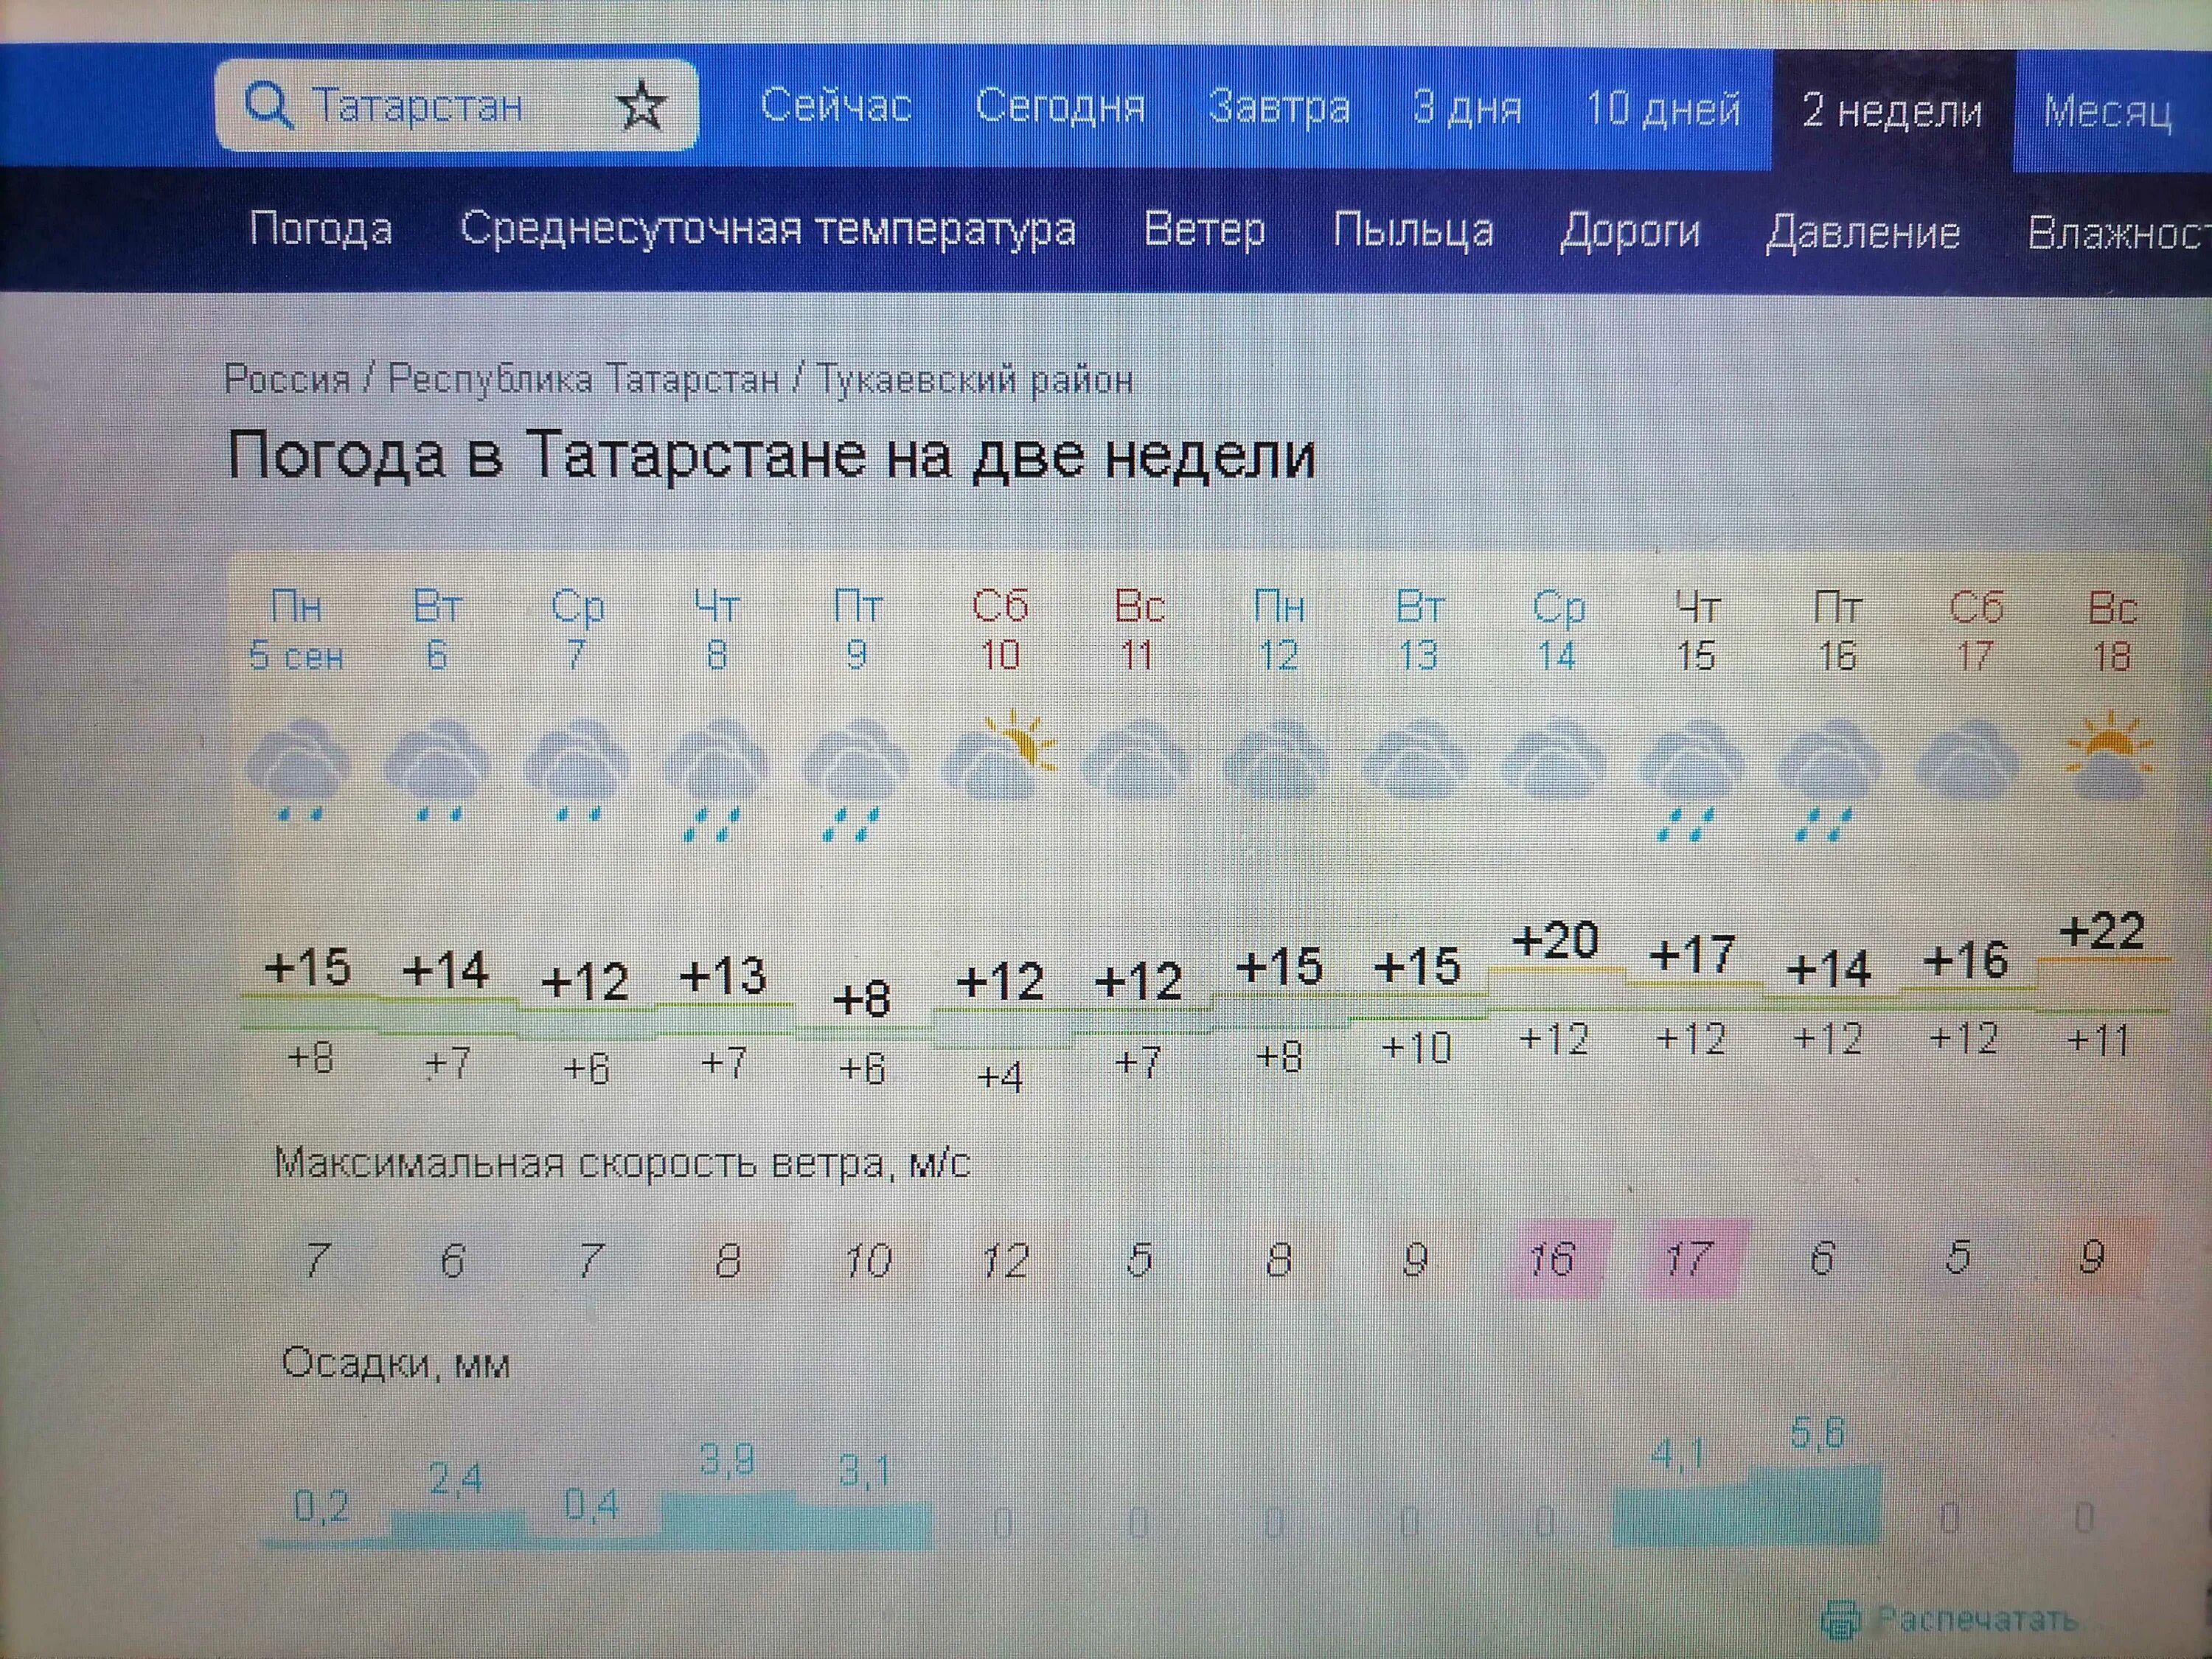 Погода в Казани. Климат Казани. Погода в Казани сегодня. Ветер в Казани сейчас.